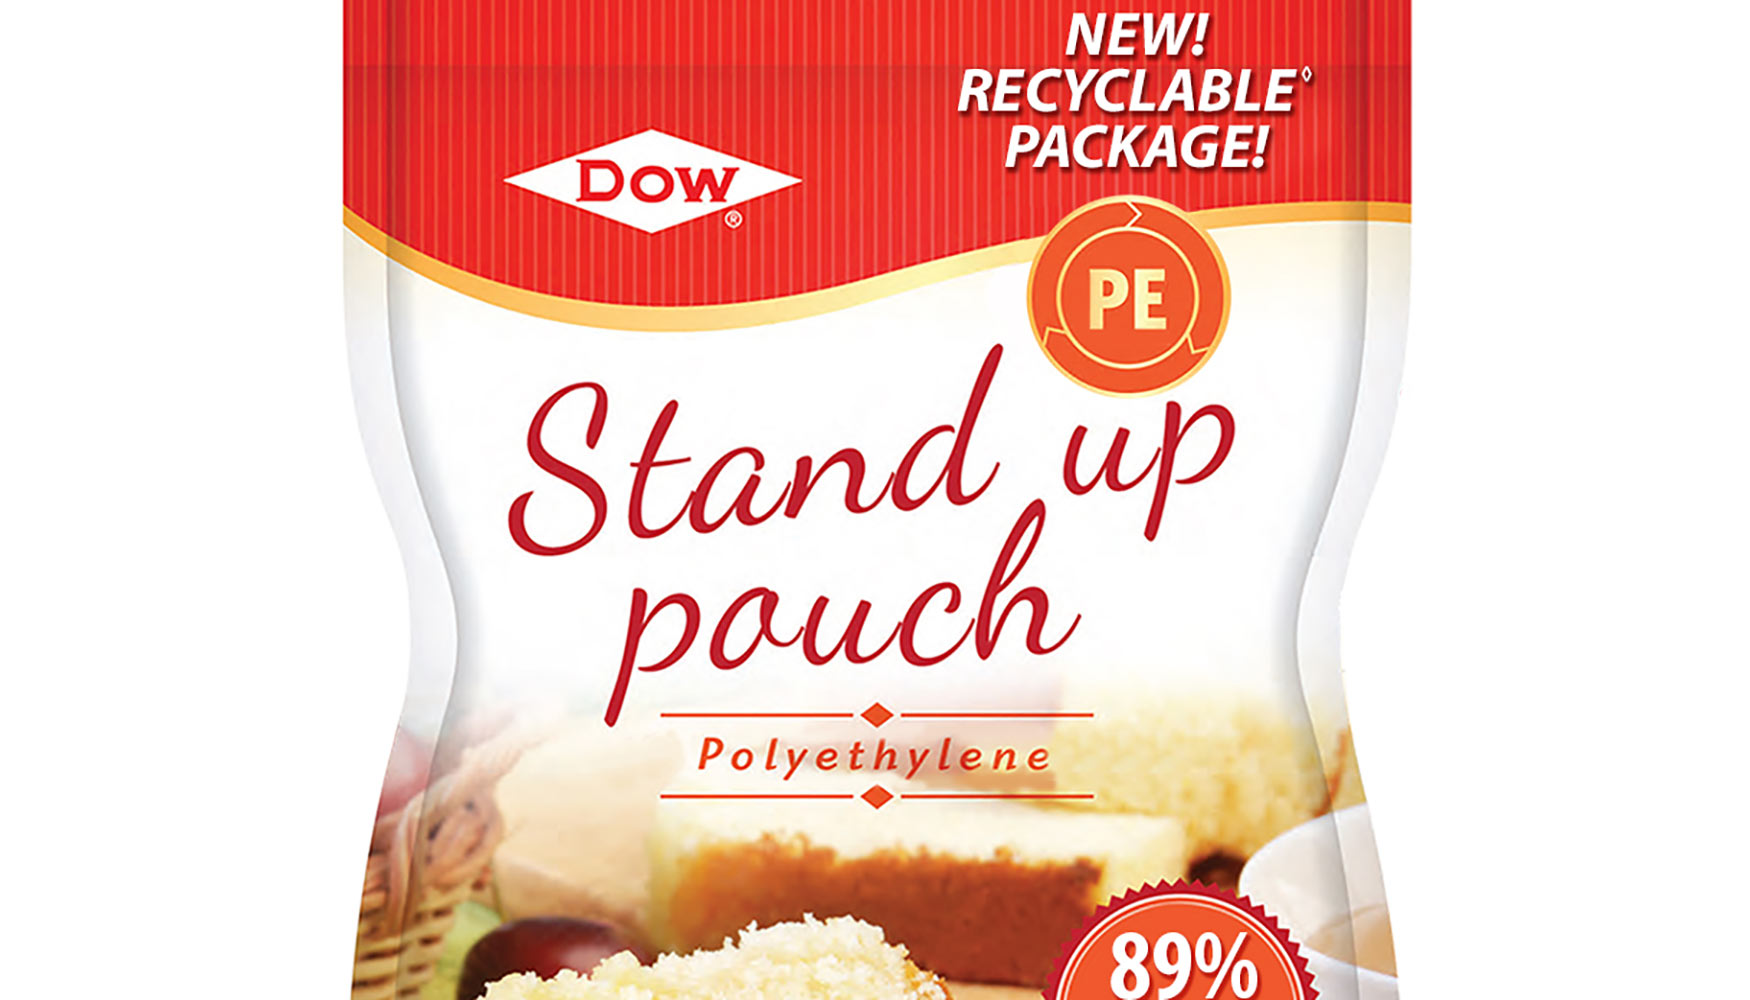 Ejemplo de envase flexible Stand up pouch